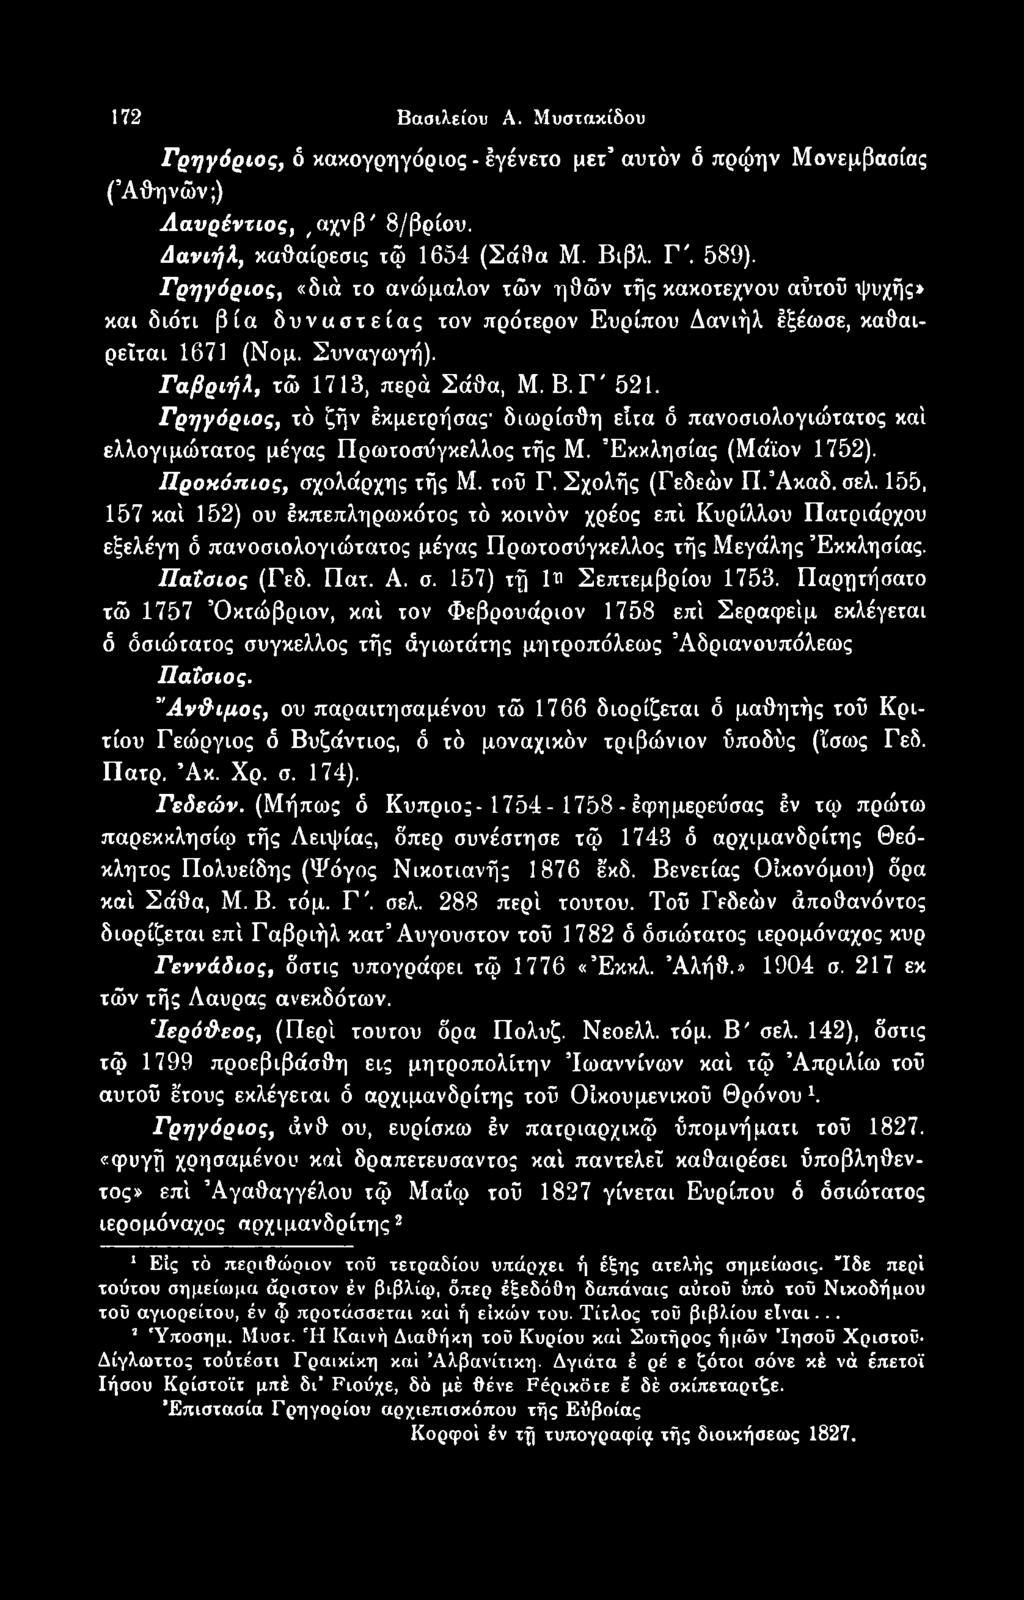 157) τή 1υ Σεπτεμβρίου 1753. Παρητήσατο τώ 1757 Οκτώβριον, καί τον Φεβρουάριον 1758 επί Σεραφείμ εκλέγεται ό όσιώτατος συγκελλος τής άγιωτάτης μητροπόλεως Άδριανουπόλεως Παΐοιος.